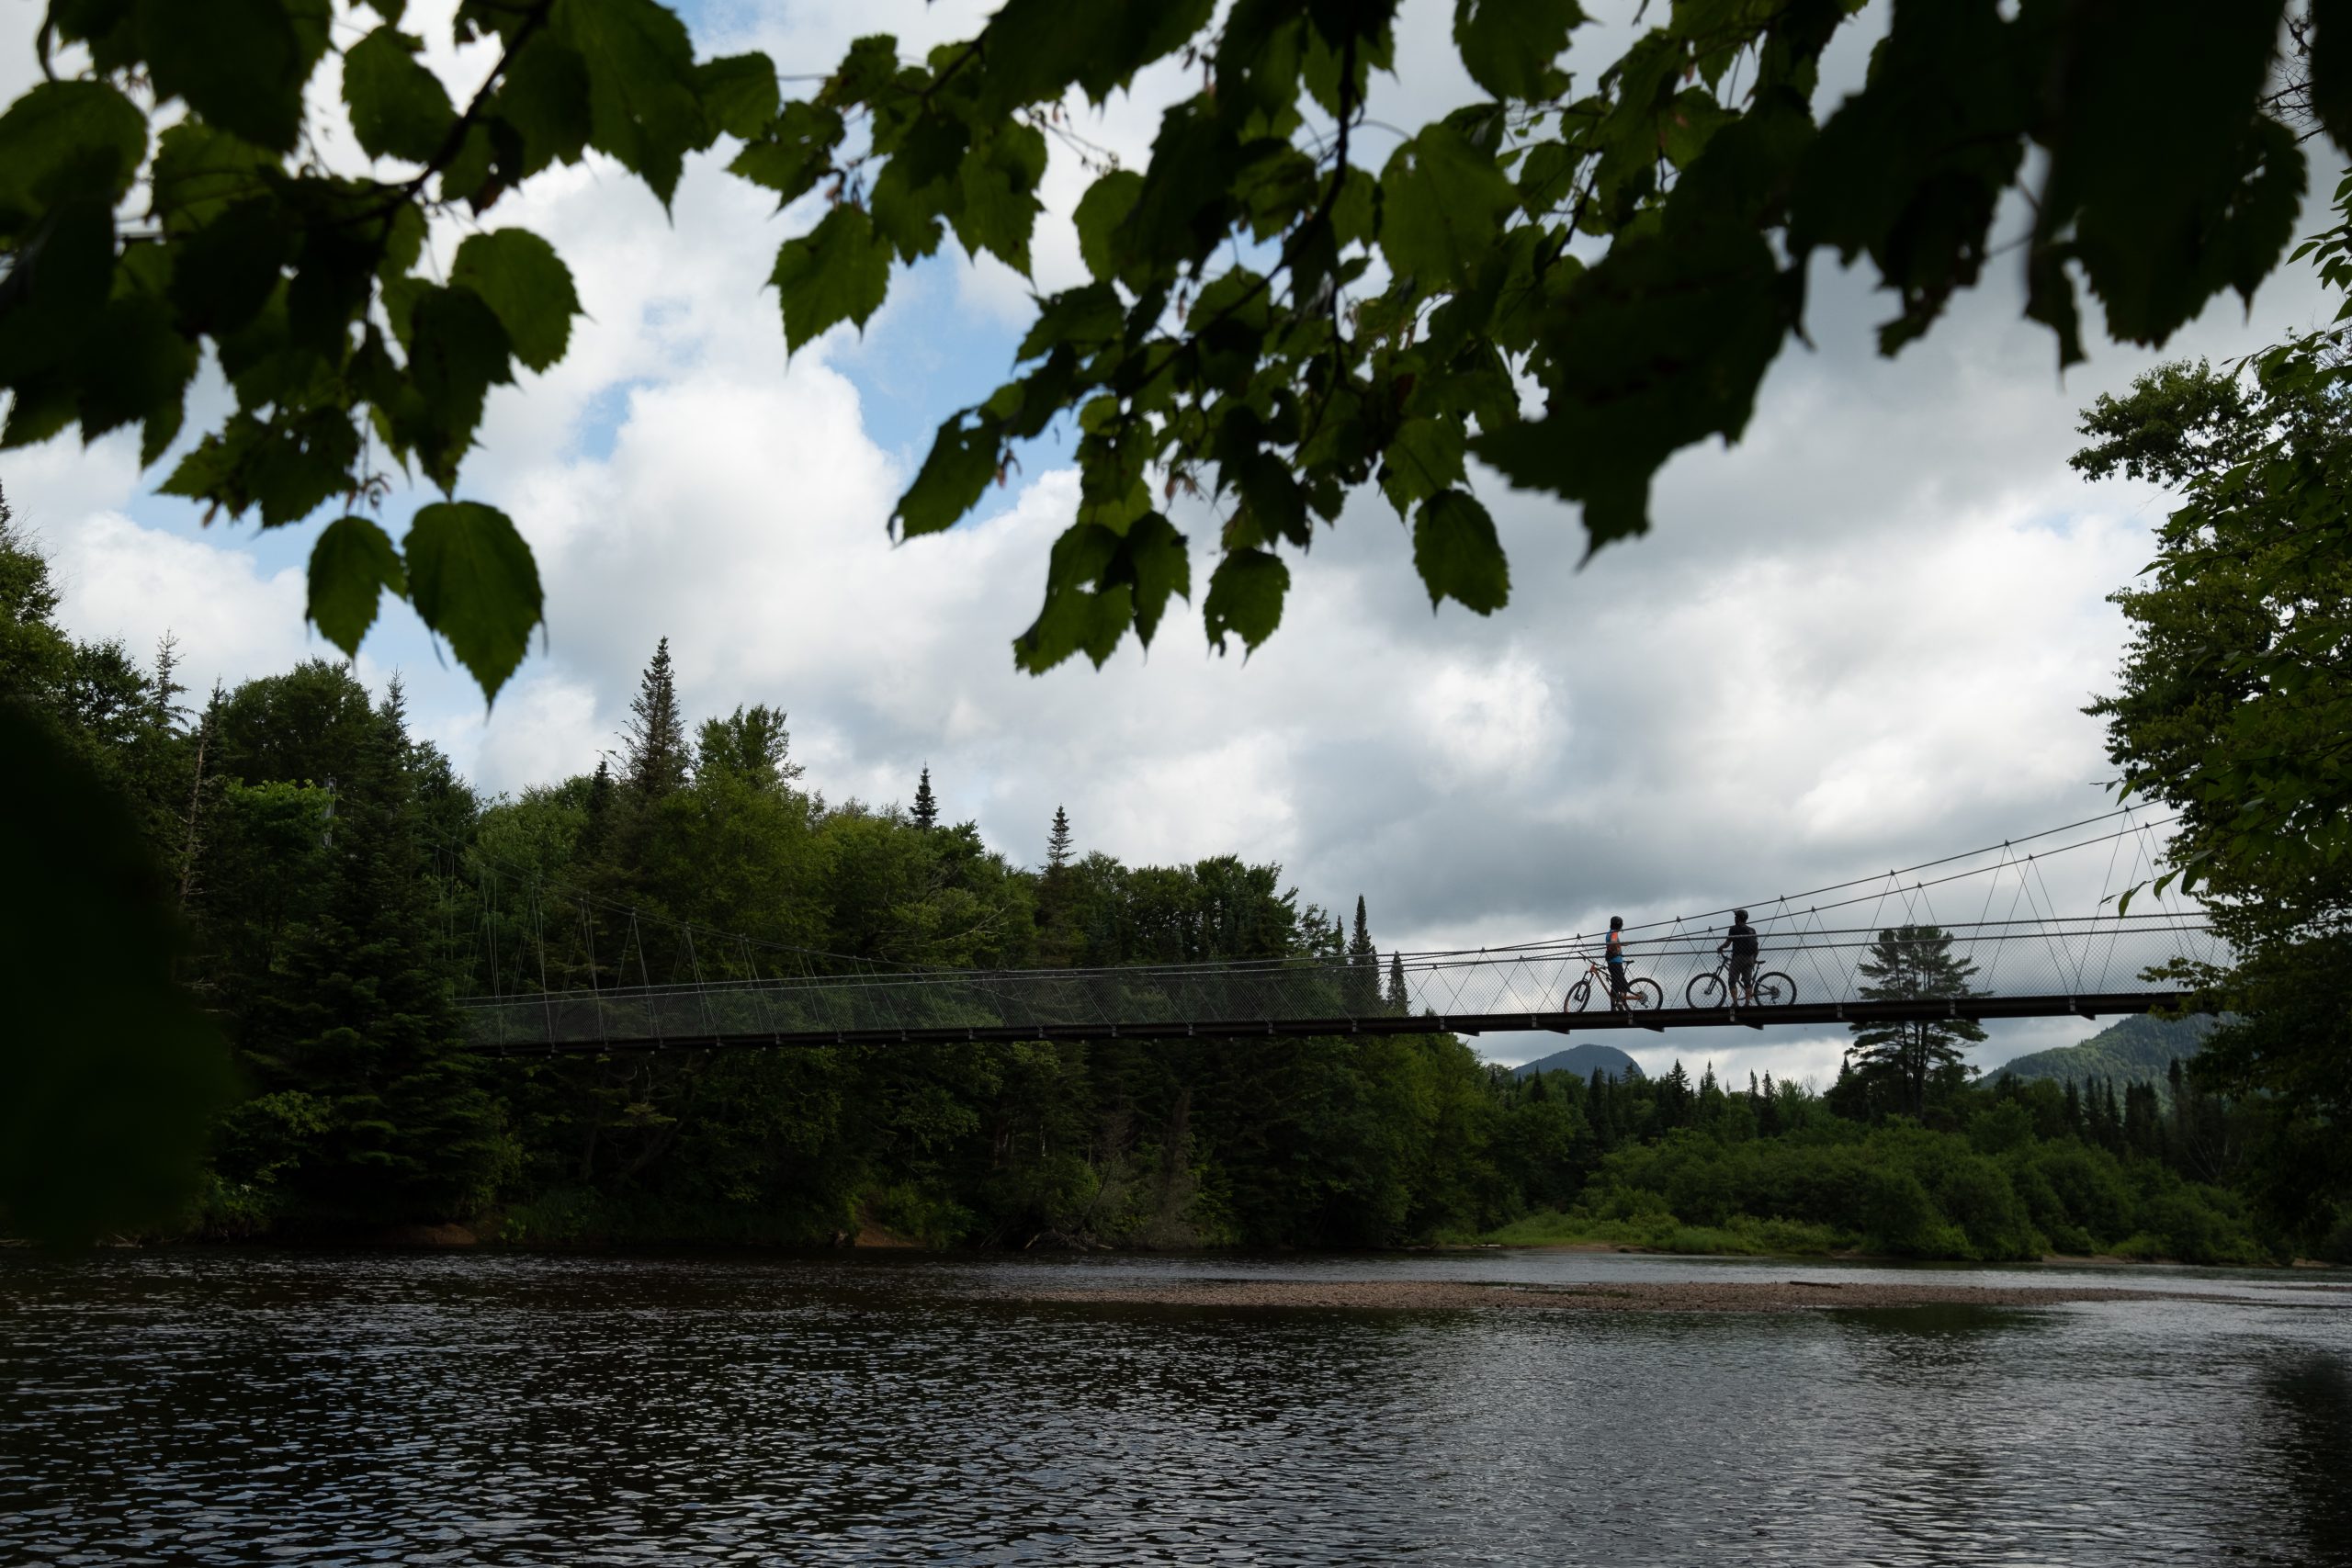 Vue du pont suspendu dans le secteur Shannahan, traversant la rivière, avec deux cyclistes admirant le paysage montagneux qu'offre la nature de la Vallée, lors de leur activité de plein air.